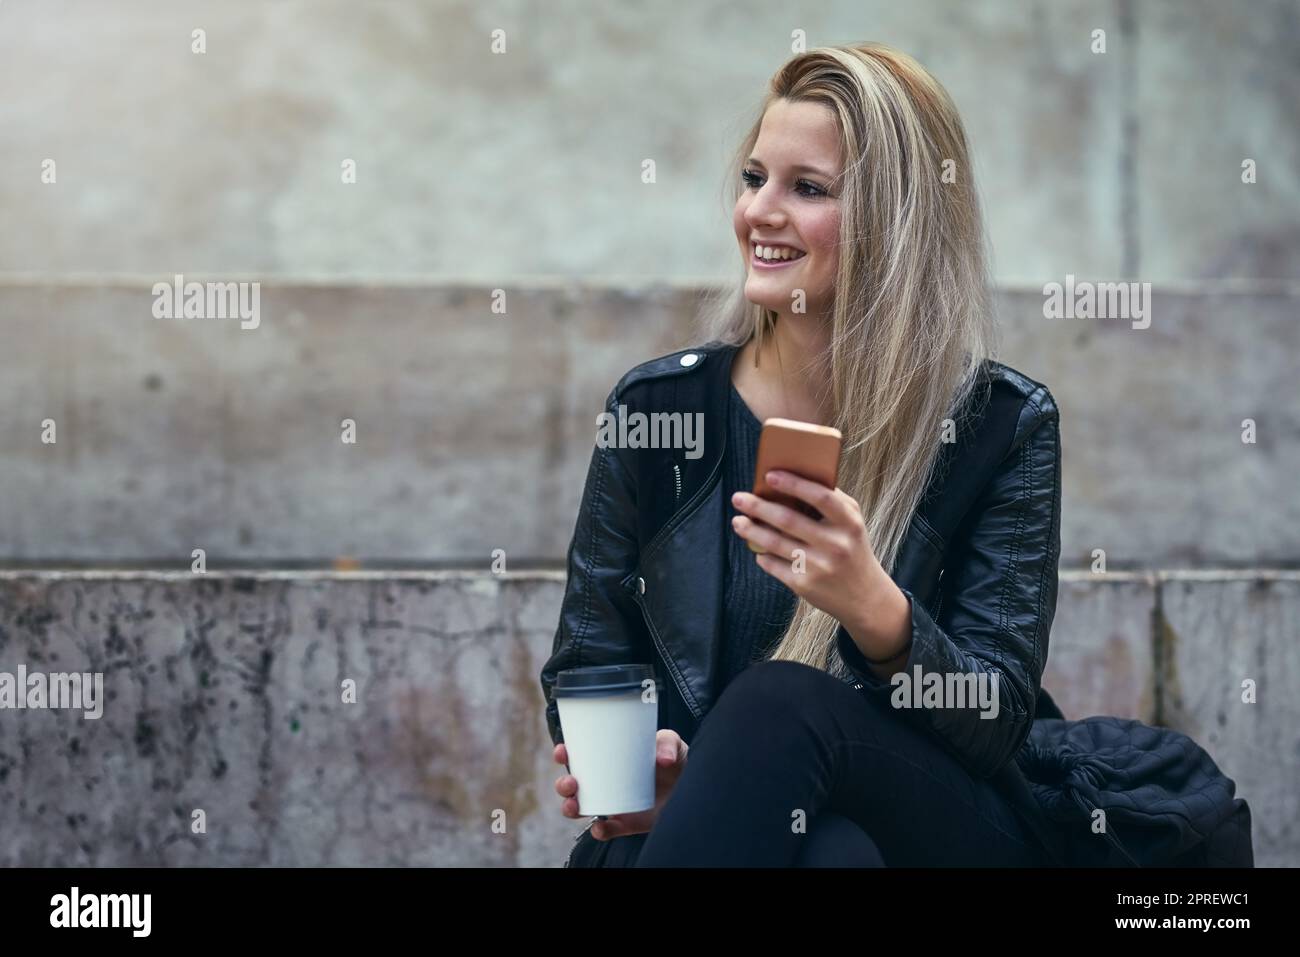 Je ne peux pas faire d'image dans un monde sans messagerie instantanée. Une femme attrayante utilisant un téléphone mobile dans la ville. Banque D'Images